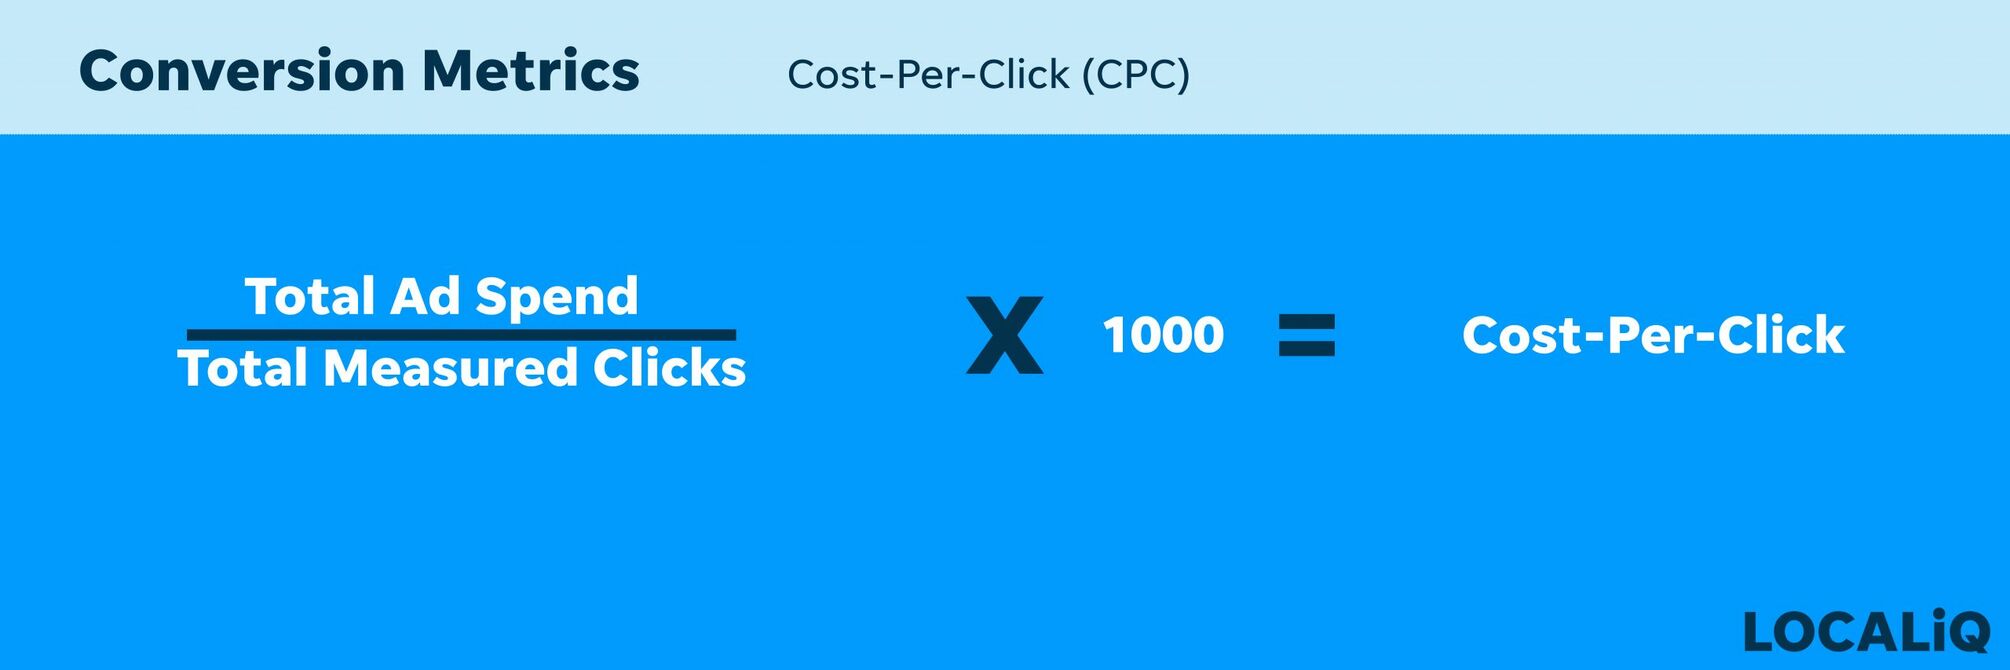 Conversion Metrics| Cost-Per-Click (CPC).